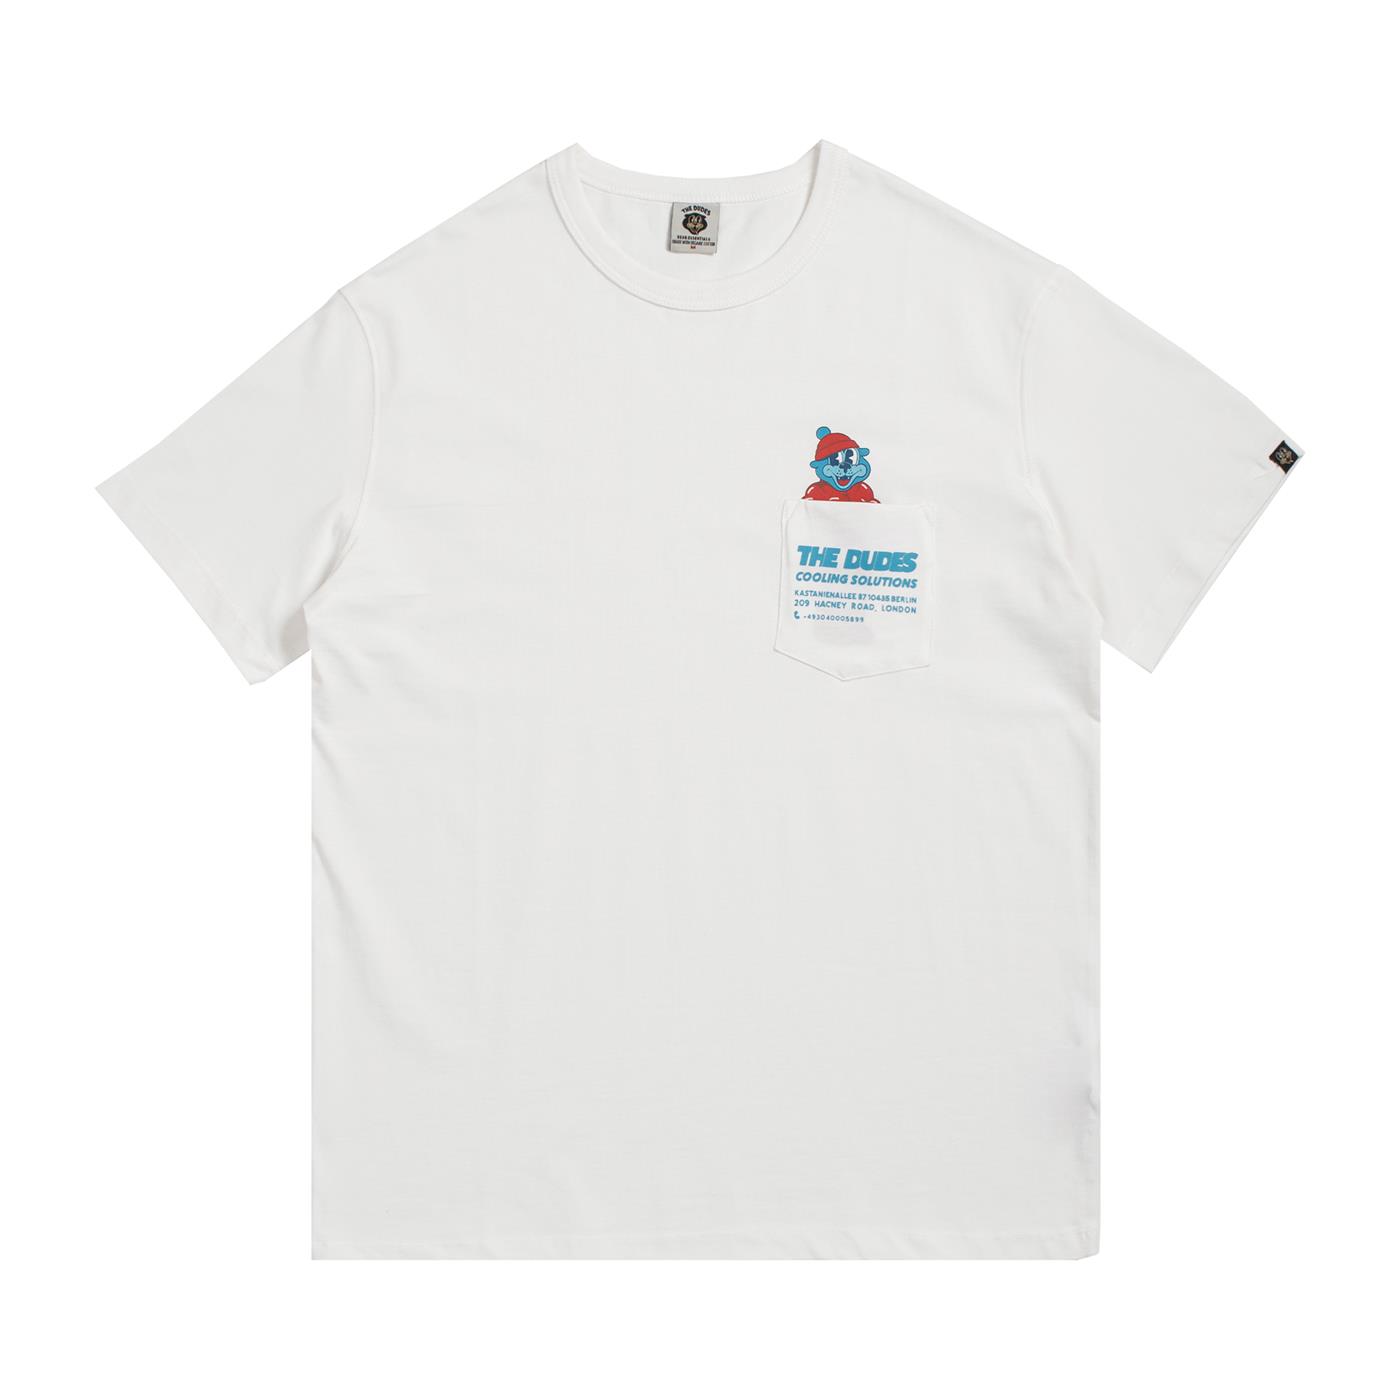 CARIUMA: Unisex Off-White Long Sleeve T-shirt